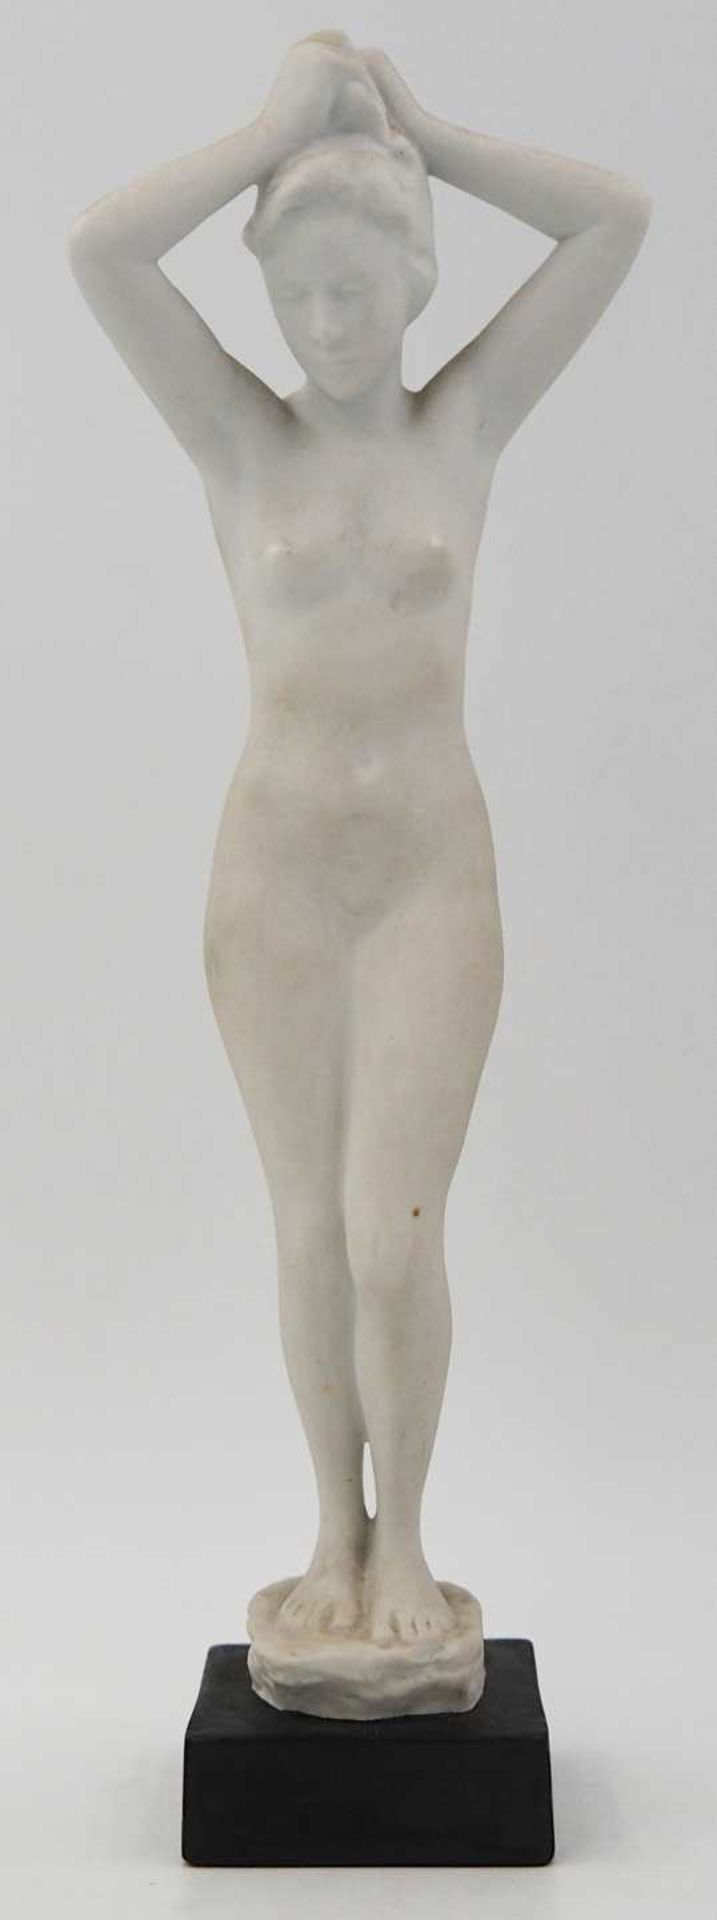 1 Figur Biskuitporzellan ROSENTHAL "Weiblicher Akt", Entwurf R. M. WERNER,wohl 1930er